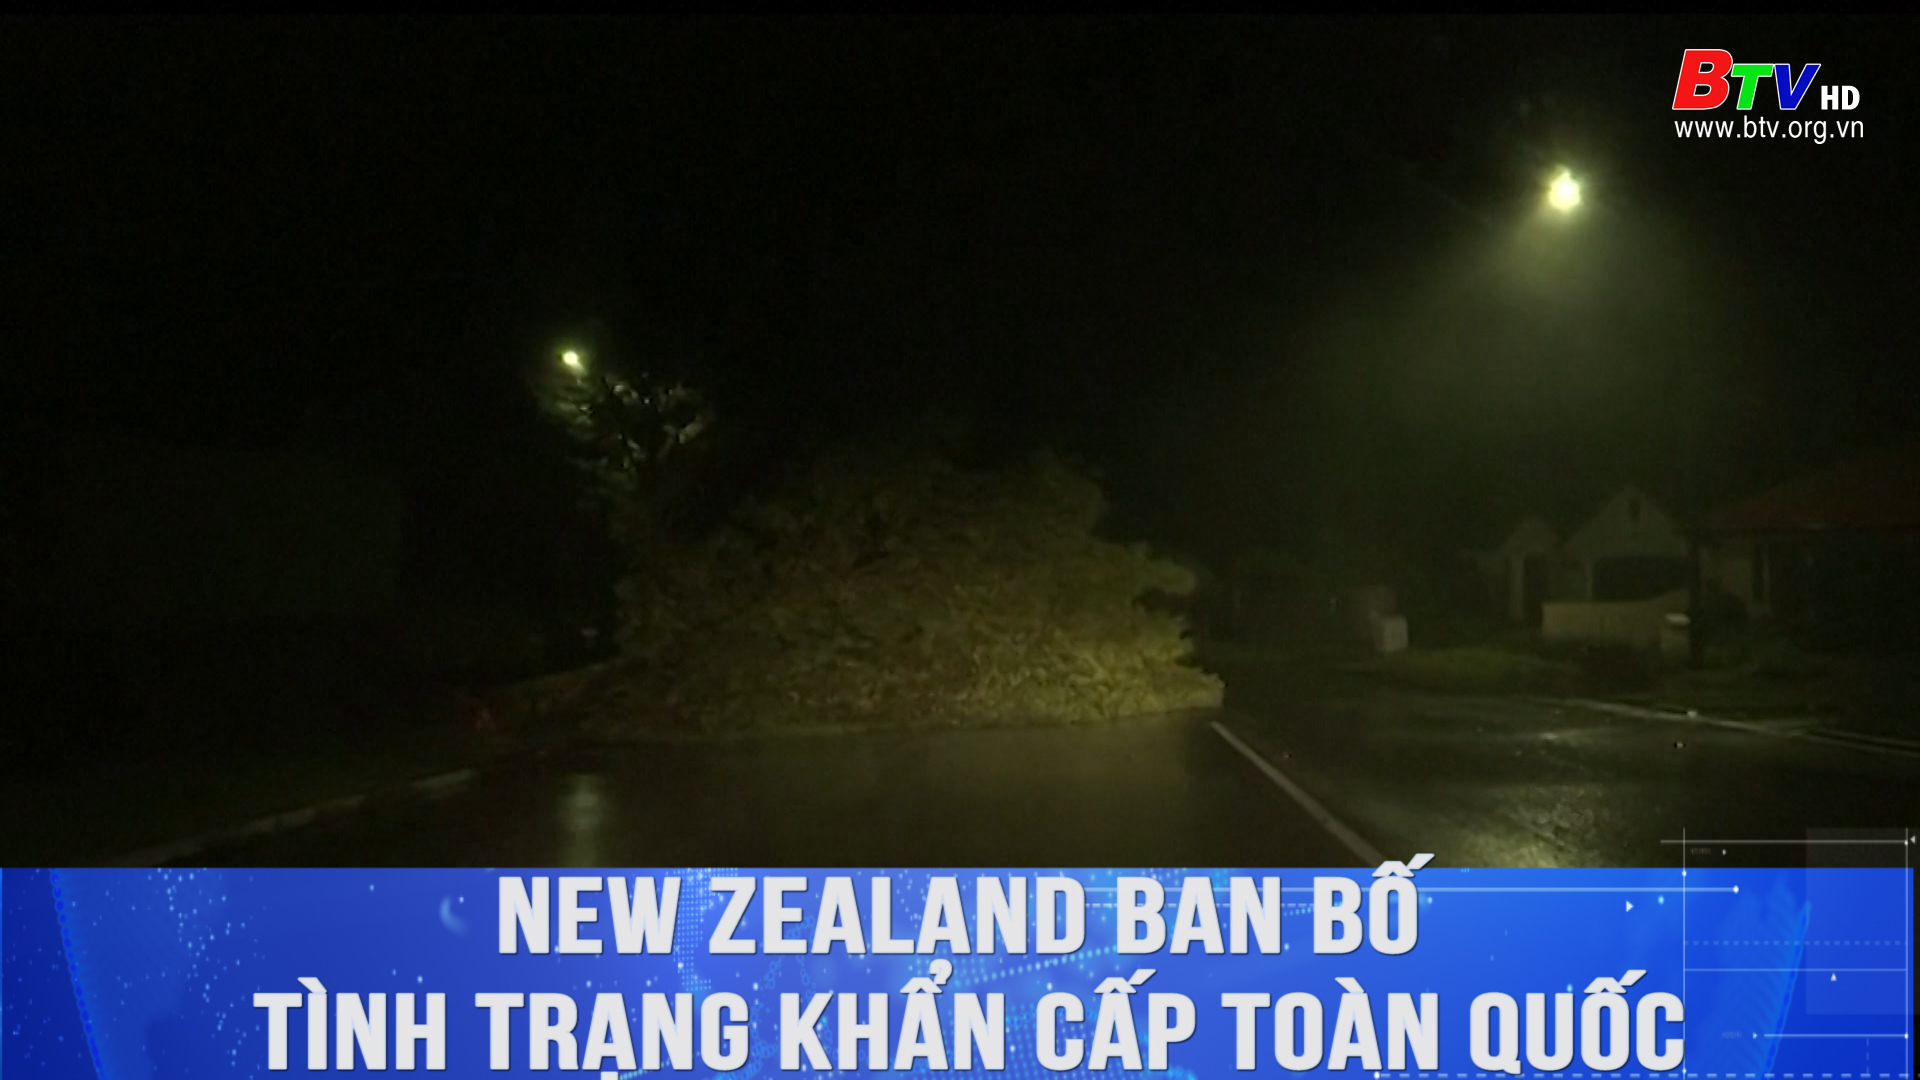 New Zealand ban bố tình trạng khẩn cấp toàn quốc